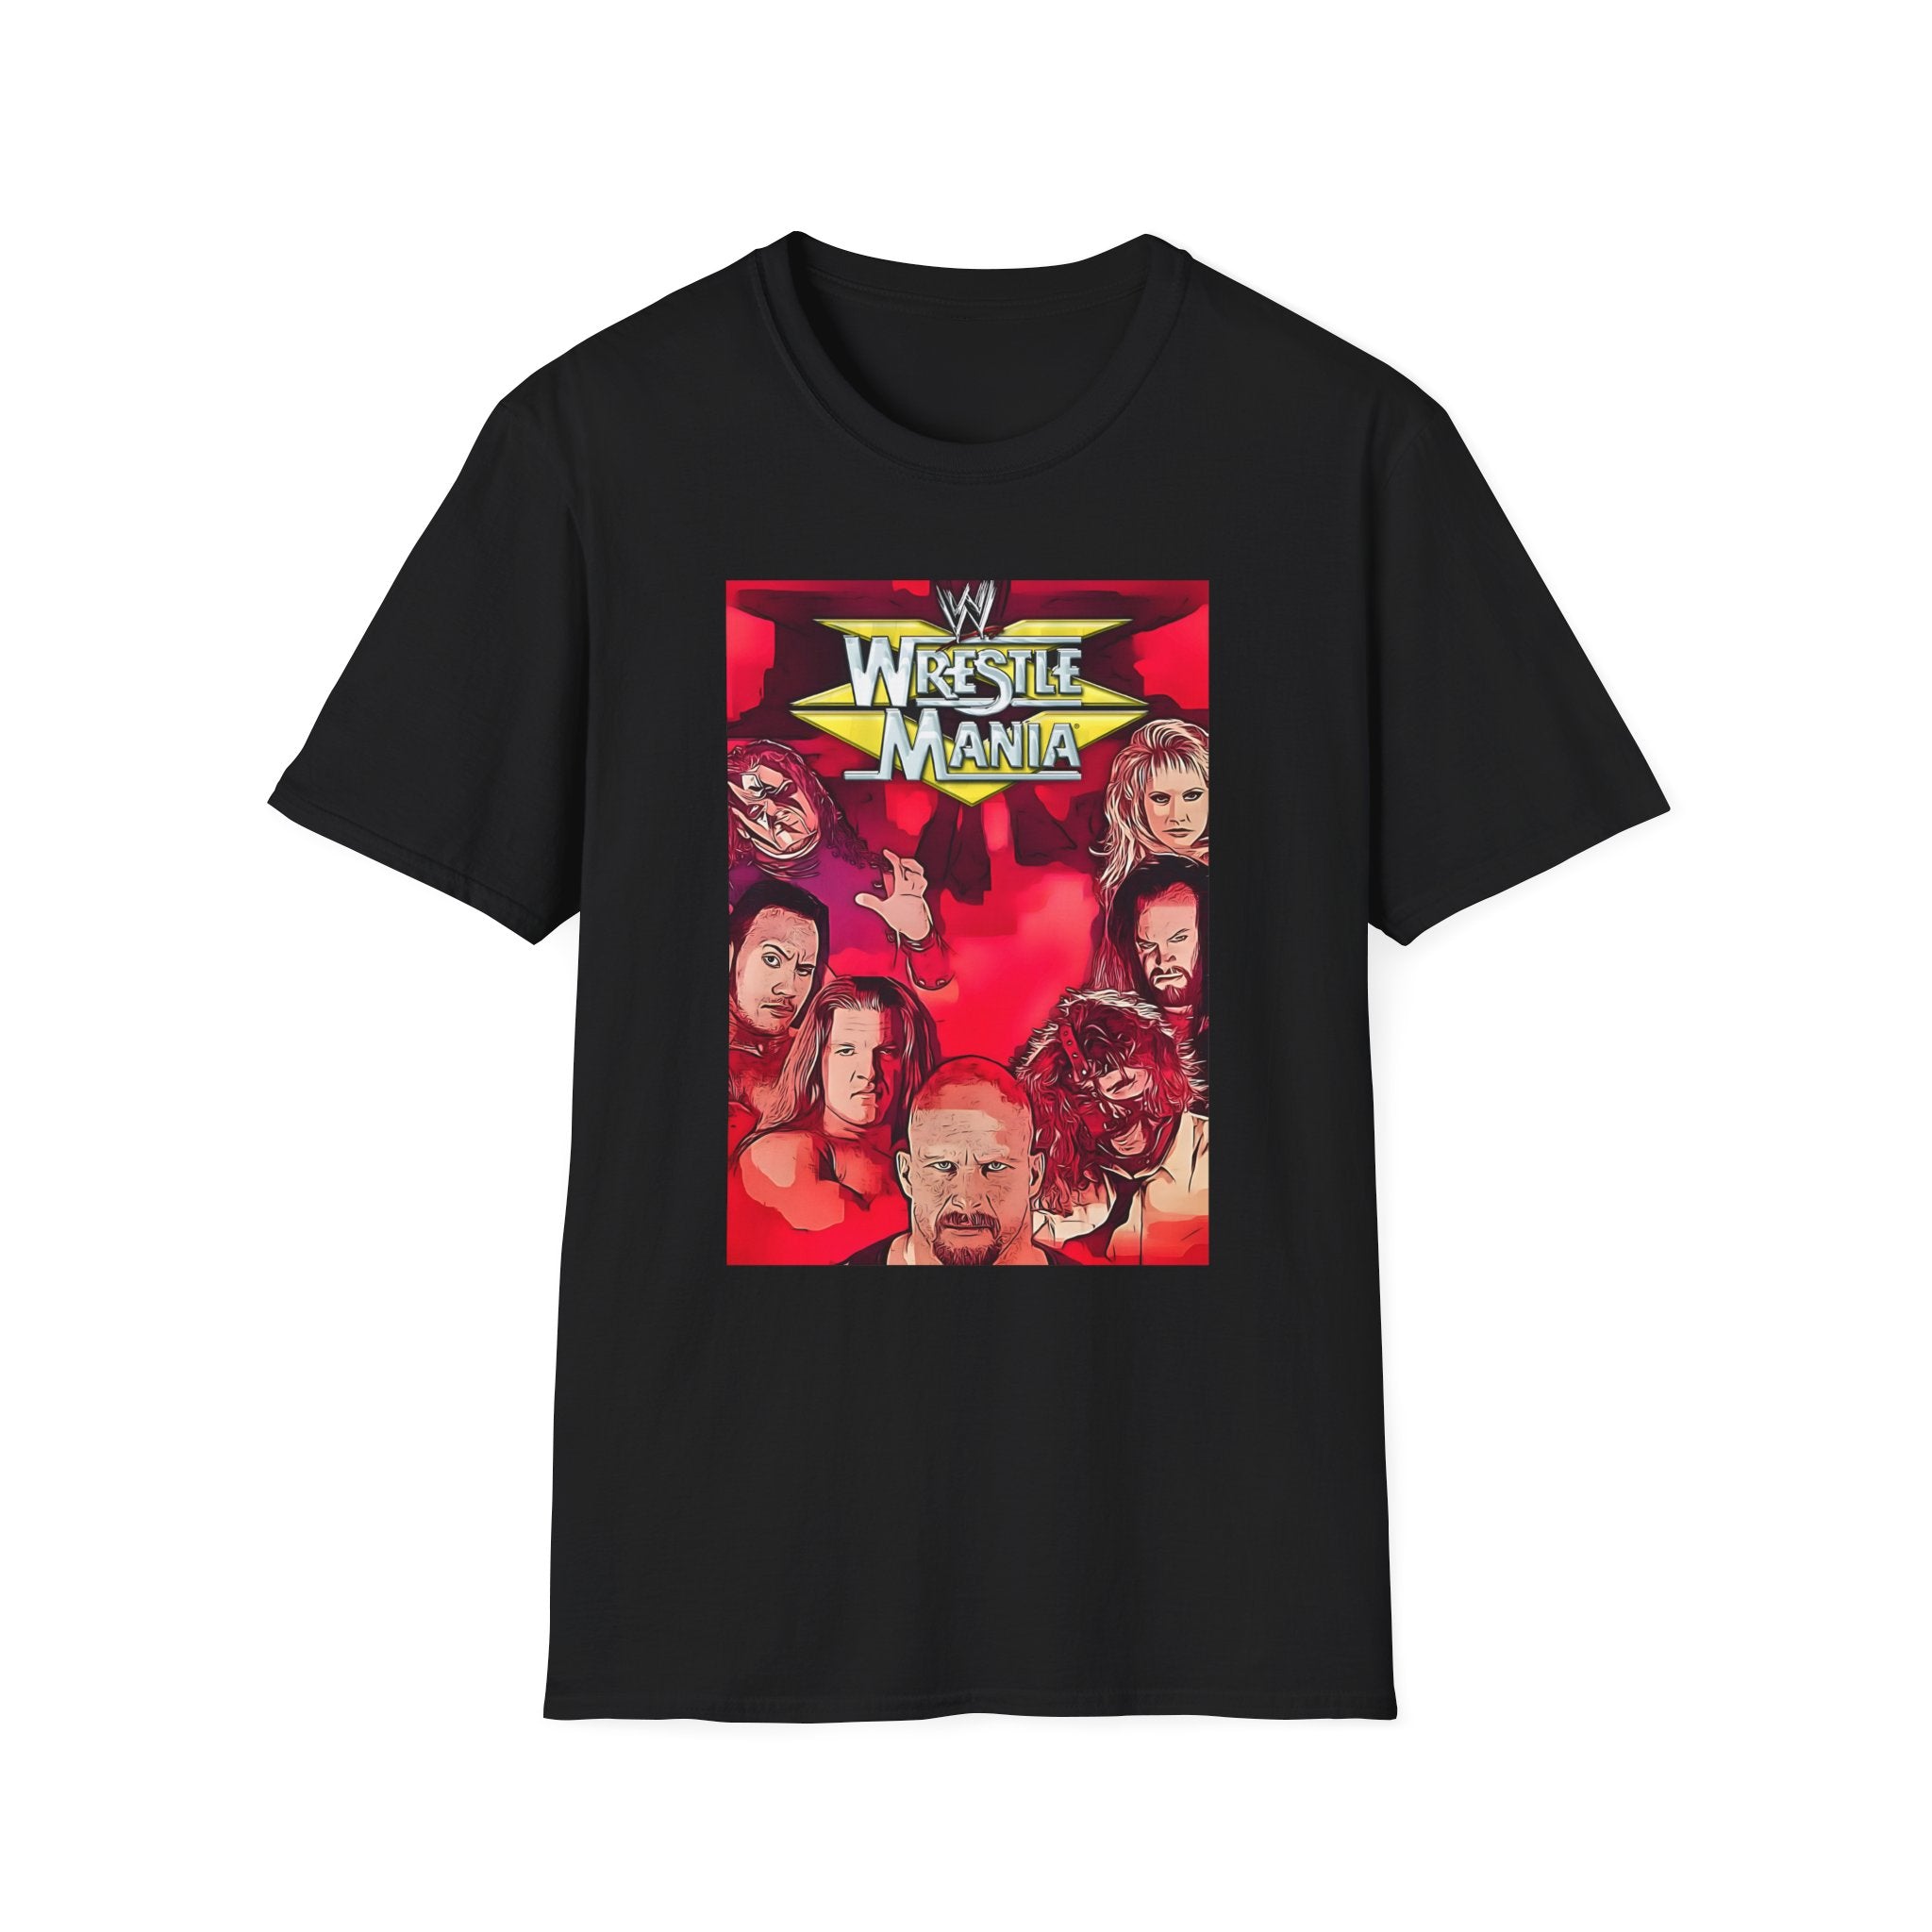 Wrestlemania 15 T-shirt